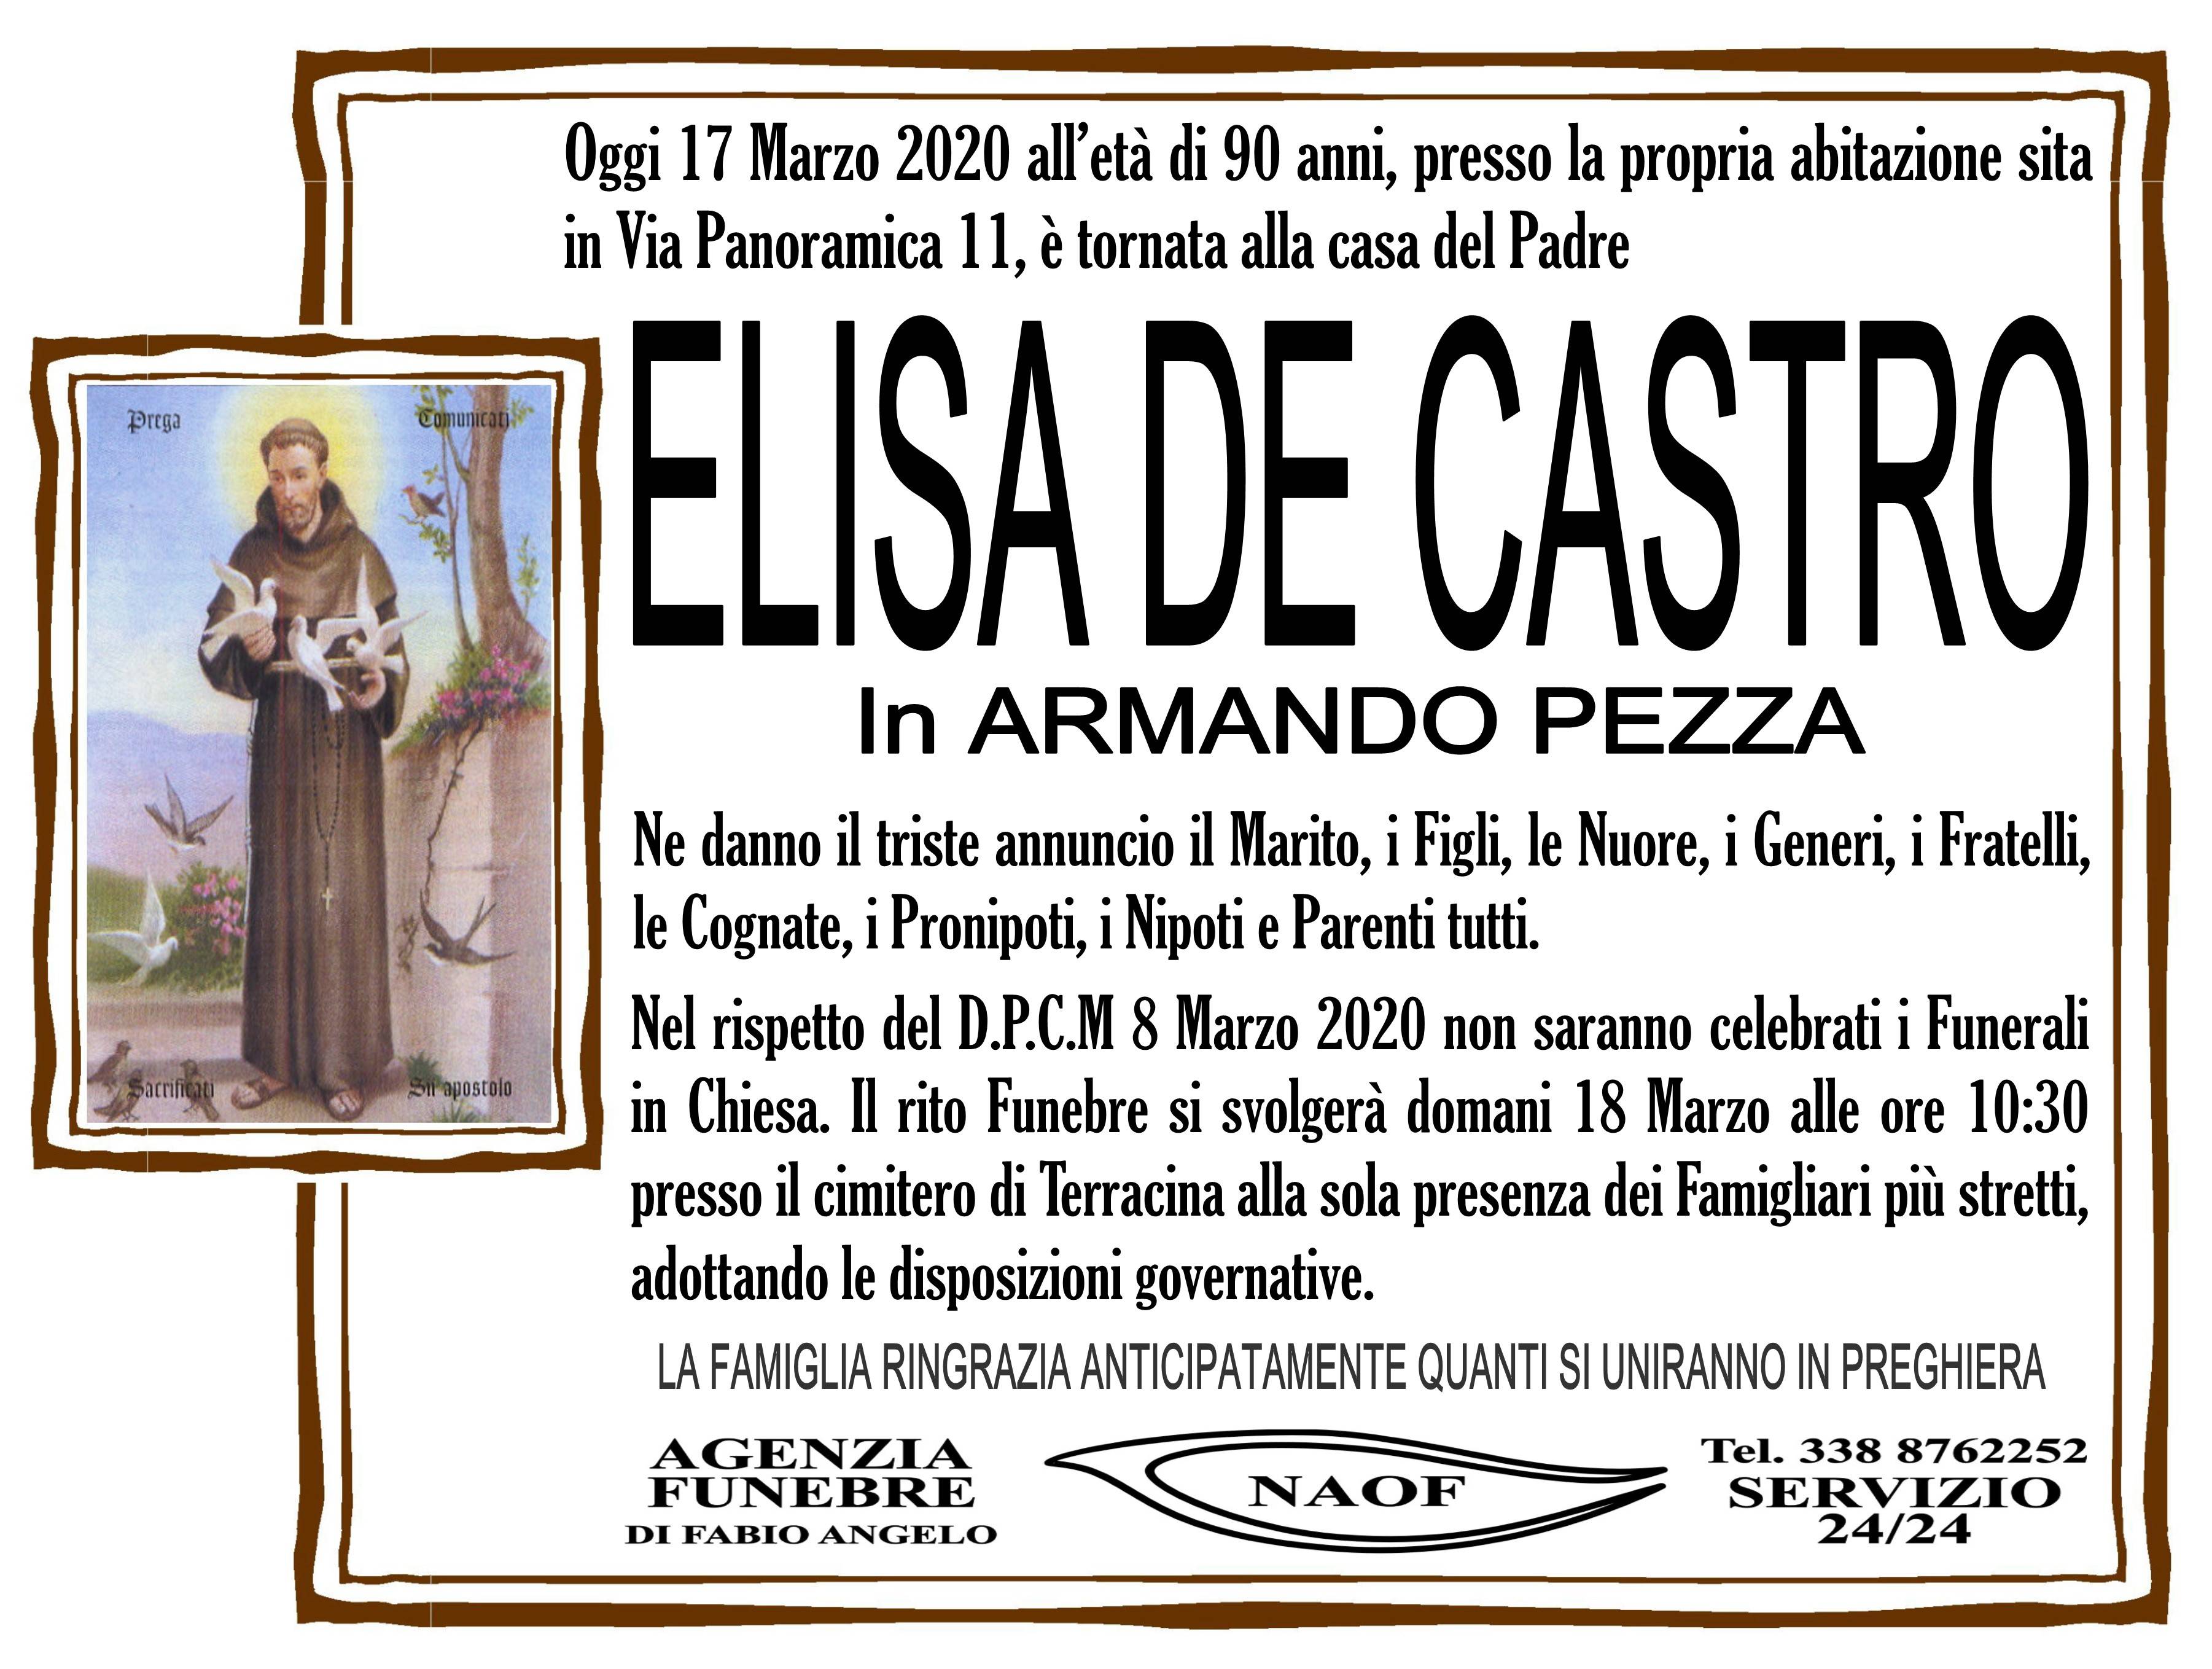 Elisa De Castro